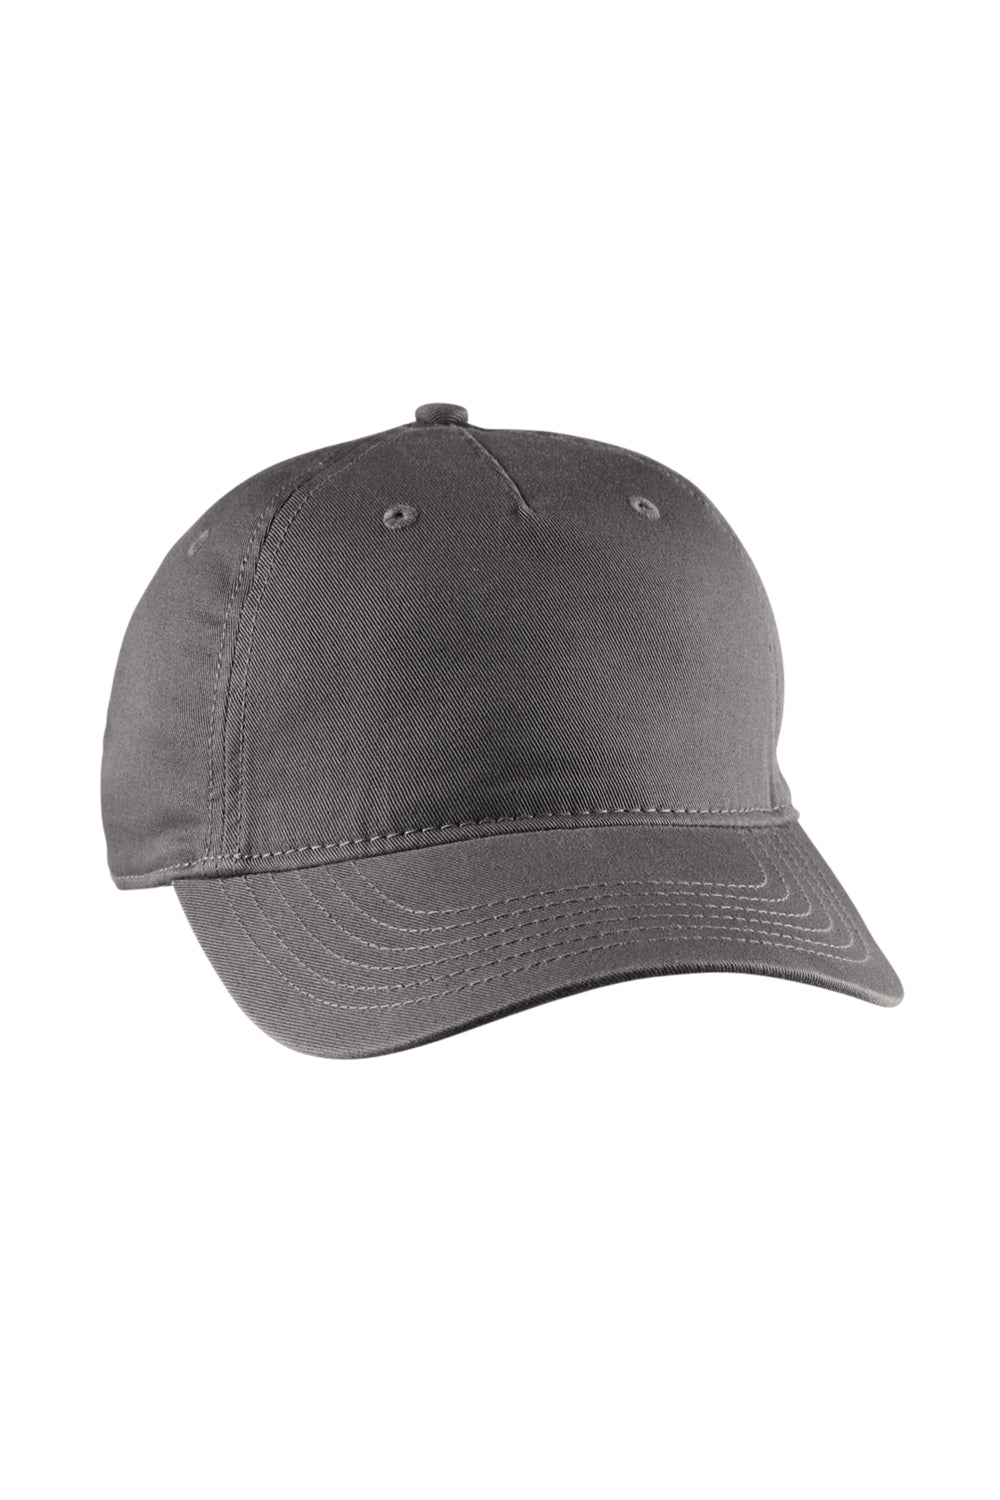 Econscious EC7087 Mens Adjustable Hat Charcoal Grey Front